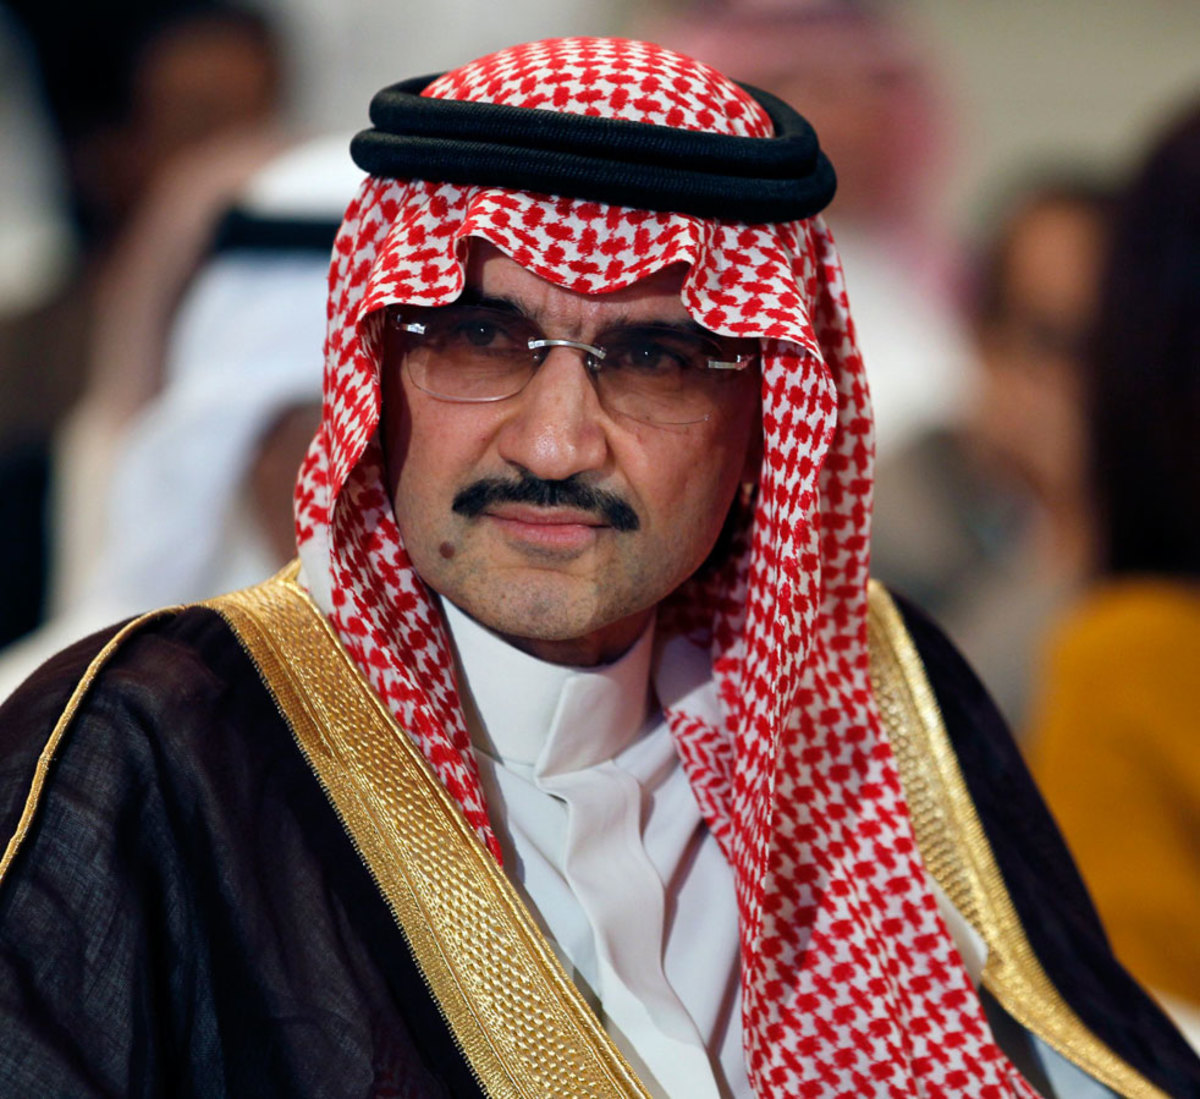 Πάτησε το πόδι του στην Κρήτη ο πρίγκιπας της Σαουδικής Αραβίας